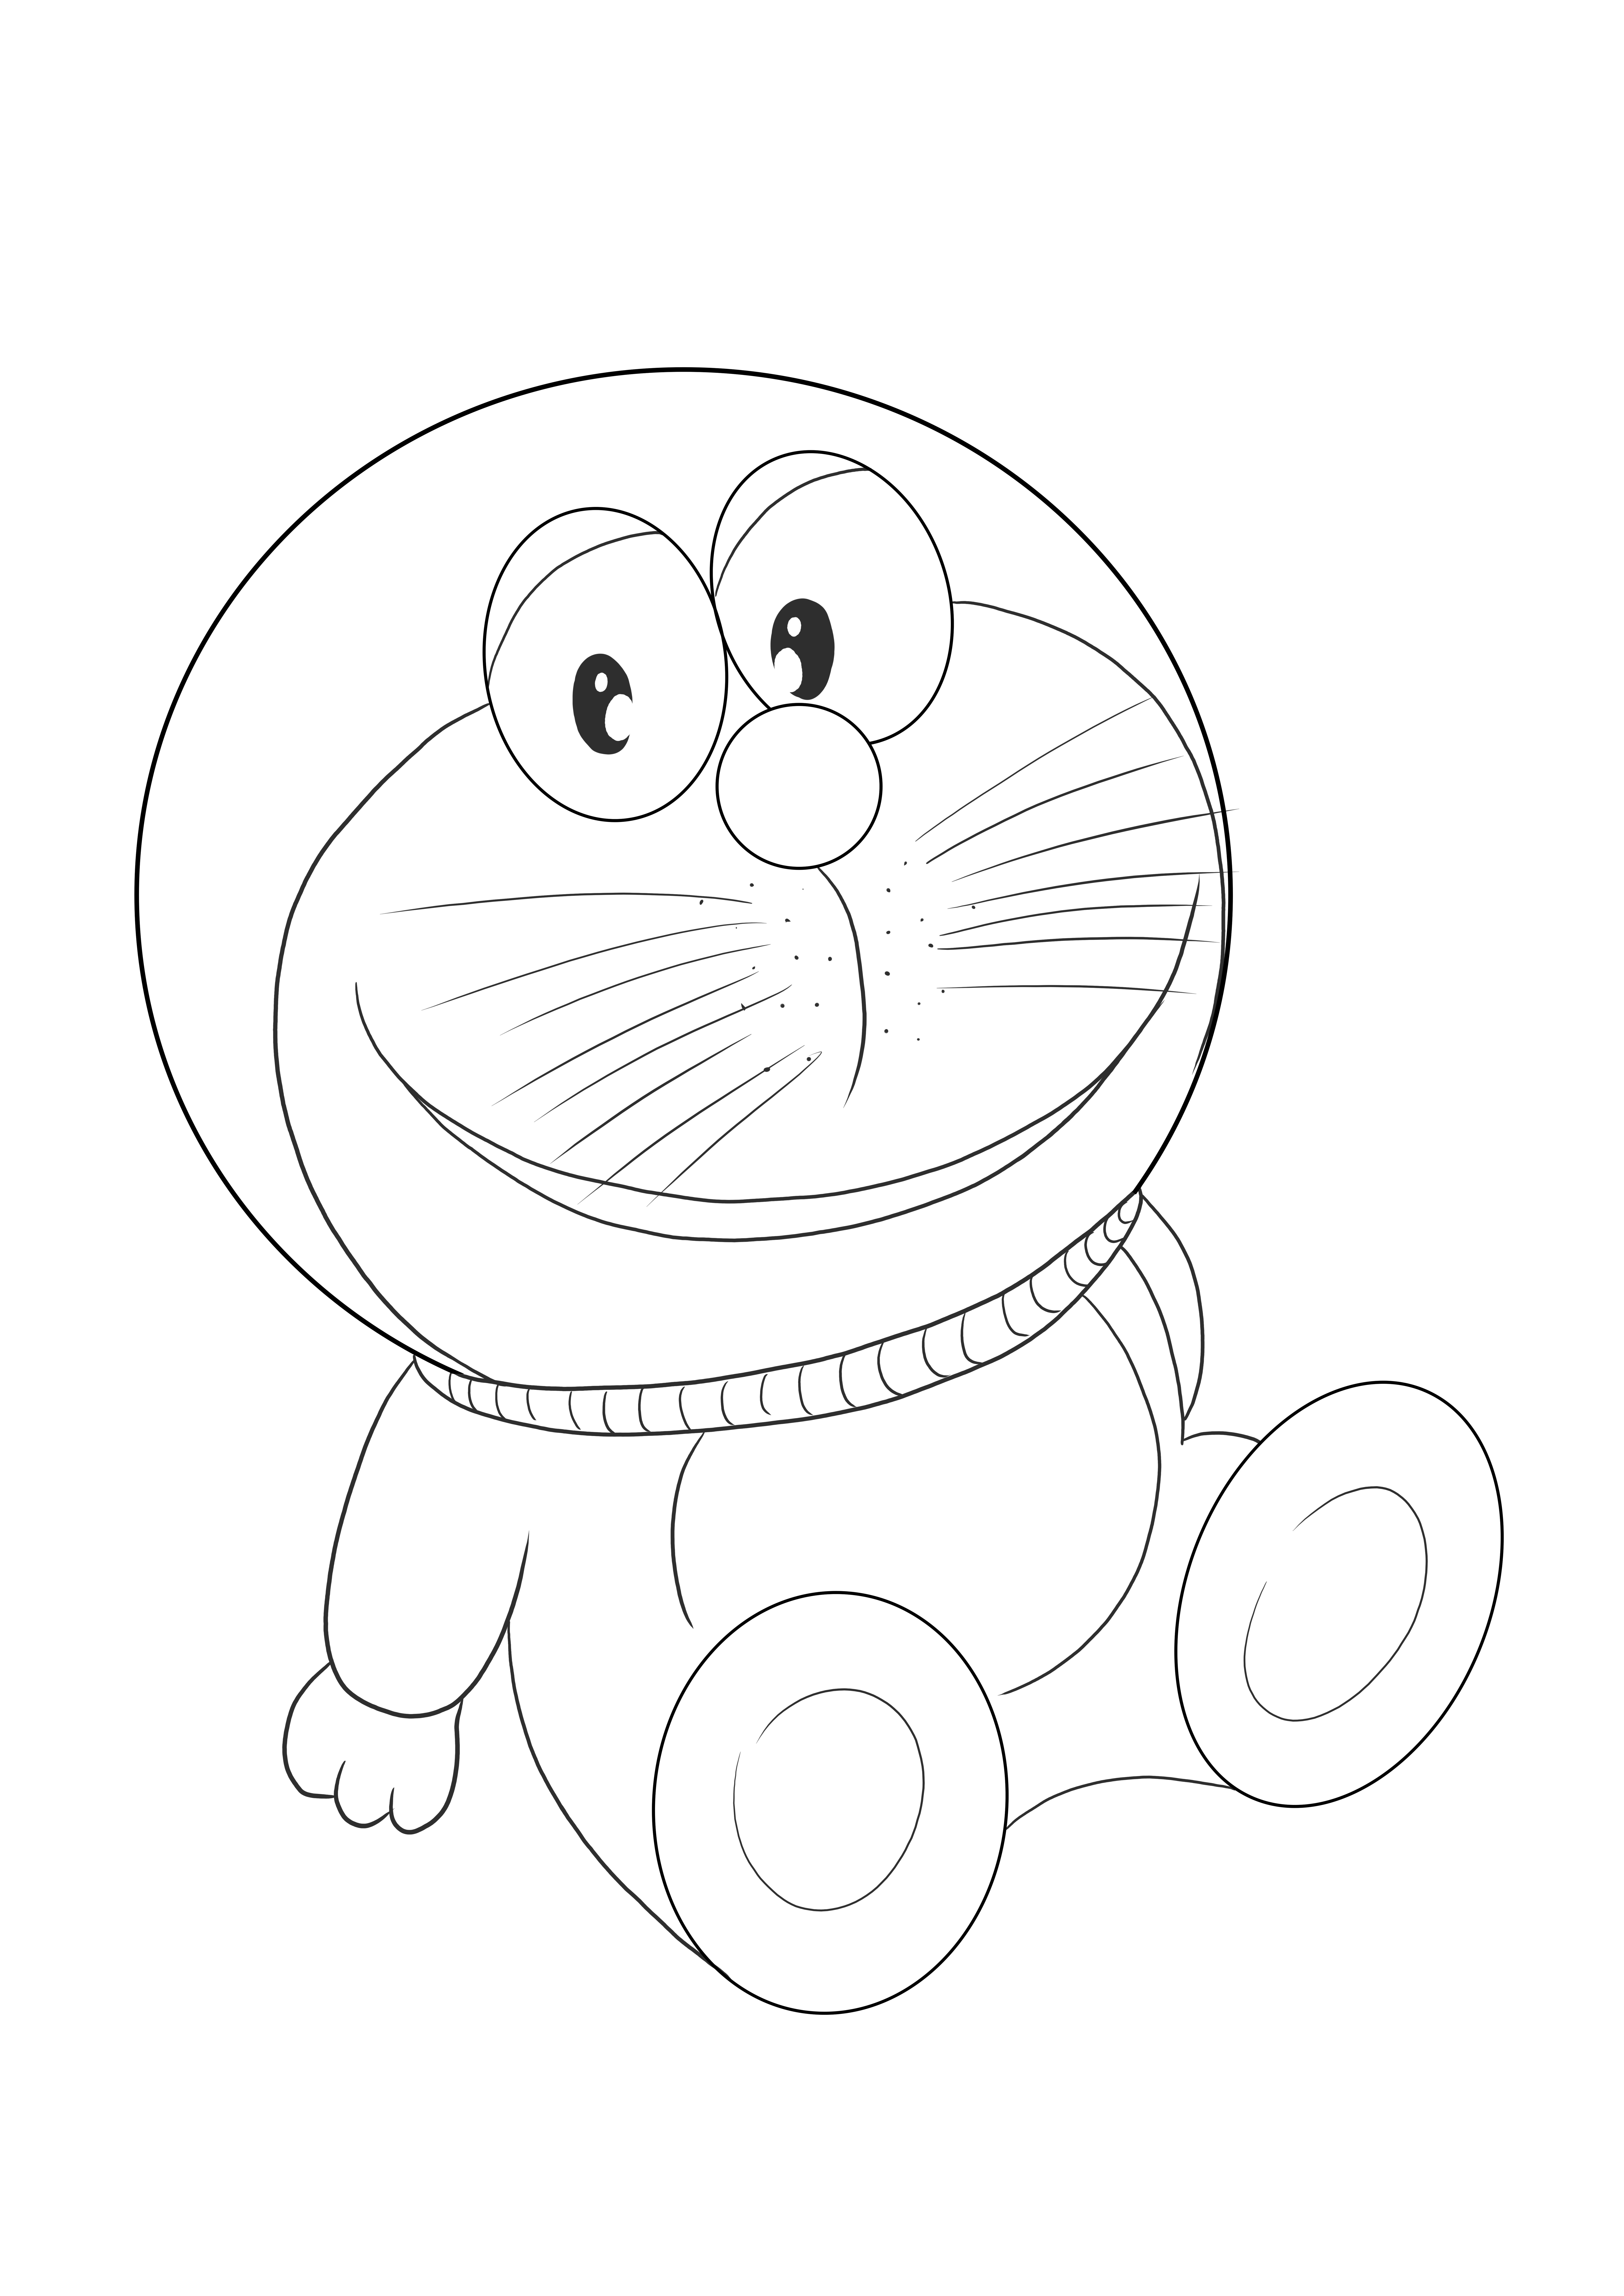 Çocuklar için renklendirmek için Doraemon ücretsiz yazdırılabilir resim